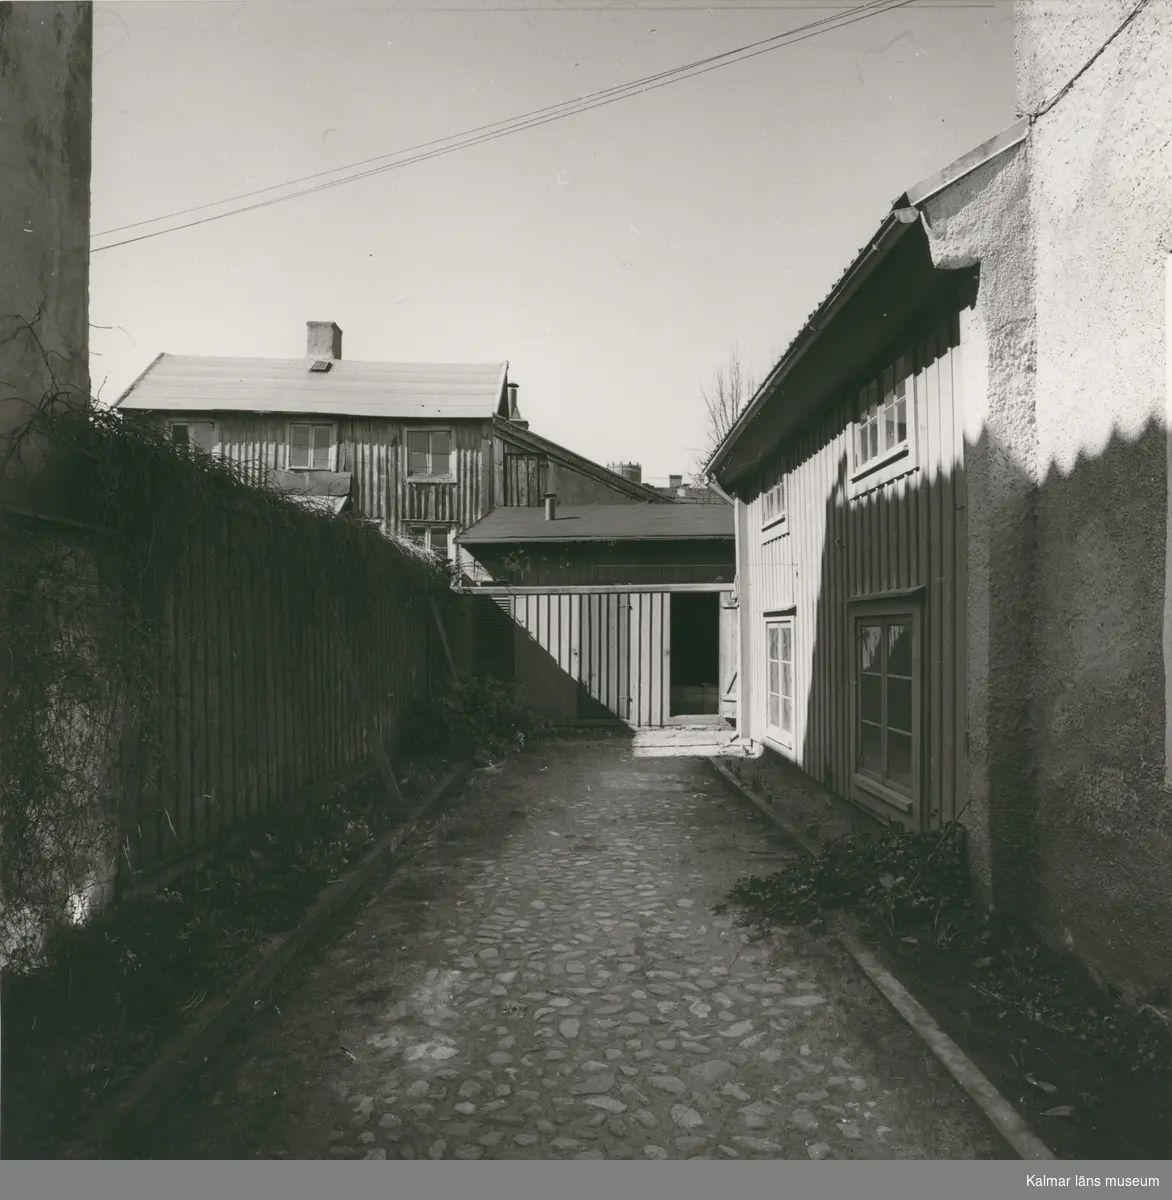 Fastighet på Västra Sjögatan, riven 1962